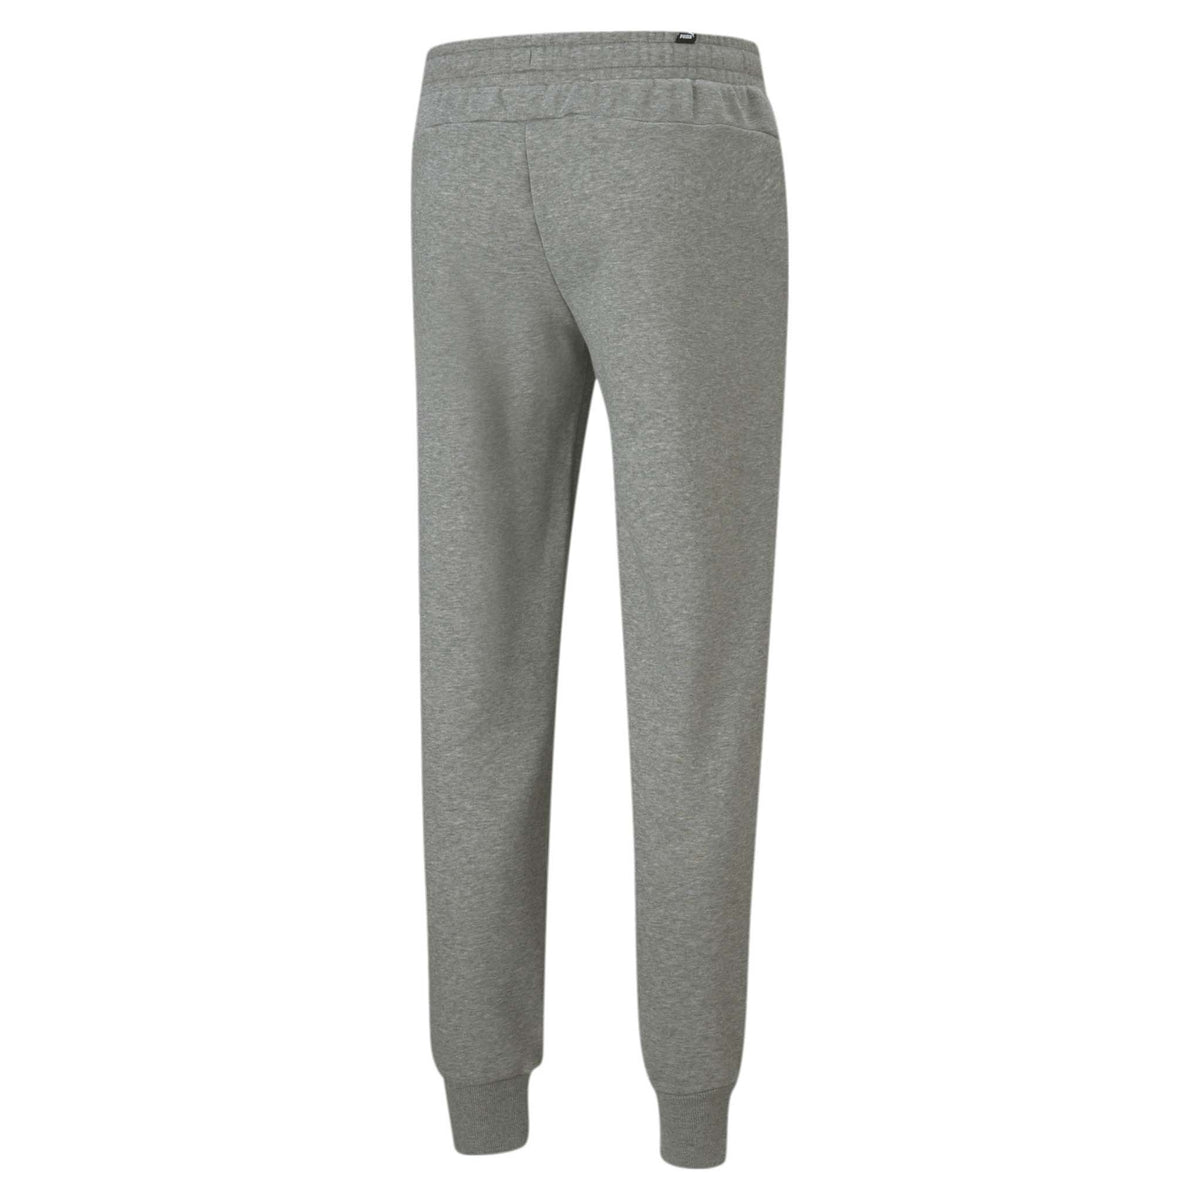 Pantalon style jogger coton ouaté gris pour homme Puma Essential Logo dos